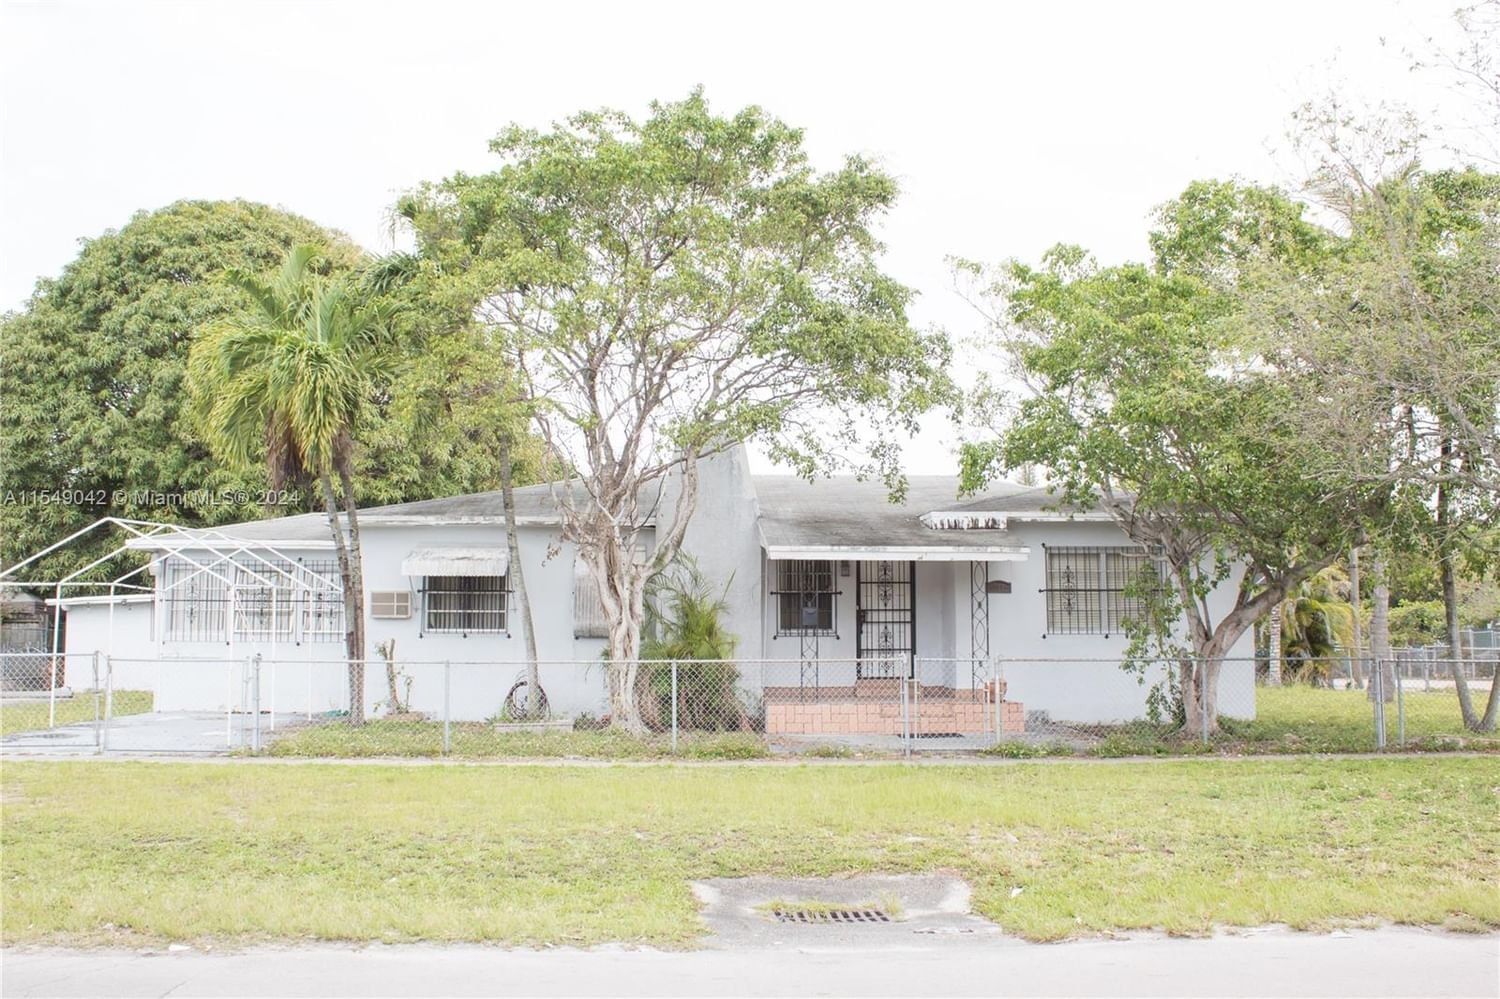 Real estate property located at 901 34th St, Miami-Dade County, BUENA VISTA PARK, Miami, FL